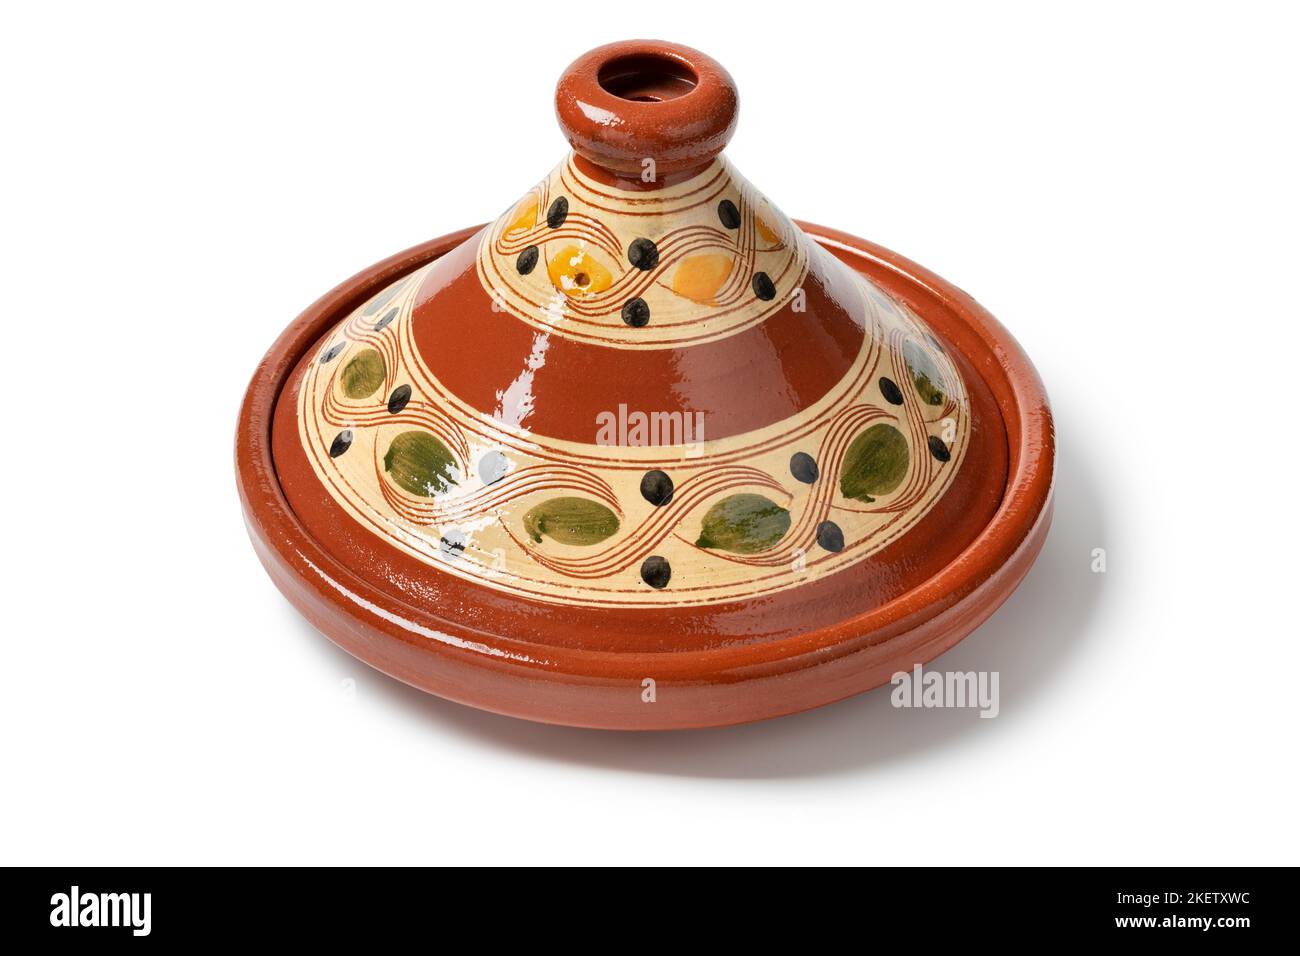 Tajine o tagine tradicional, una olla de cerámica del norte de África aislada sobre fondo blanco Foto de stock